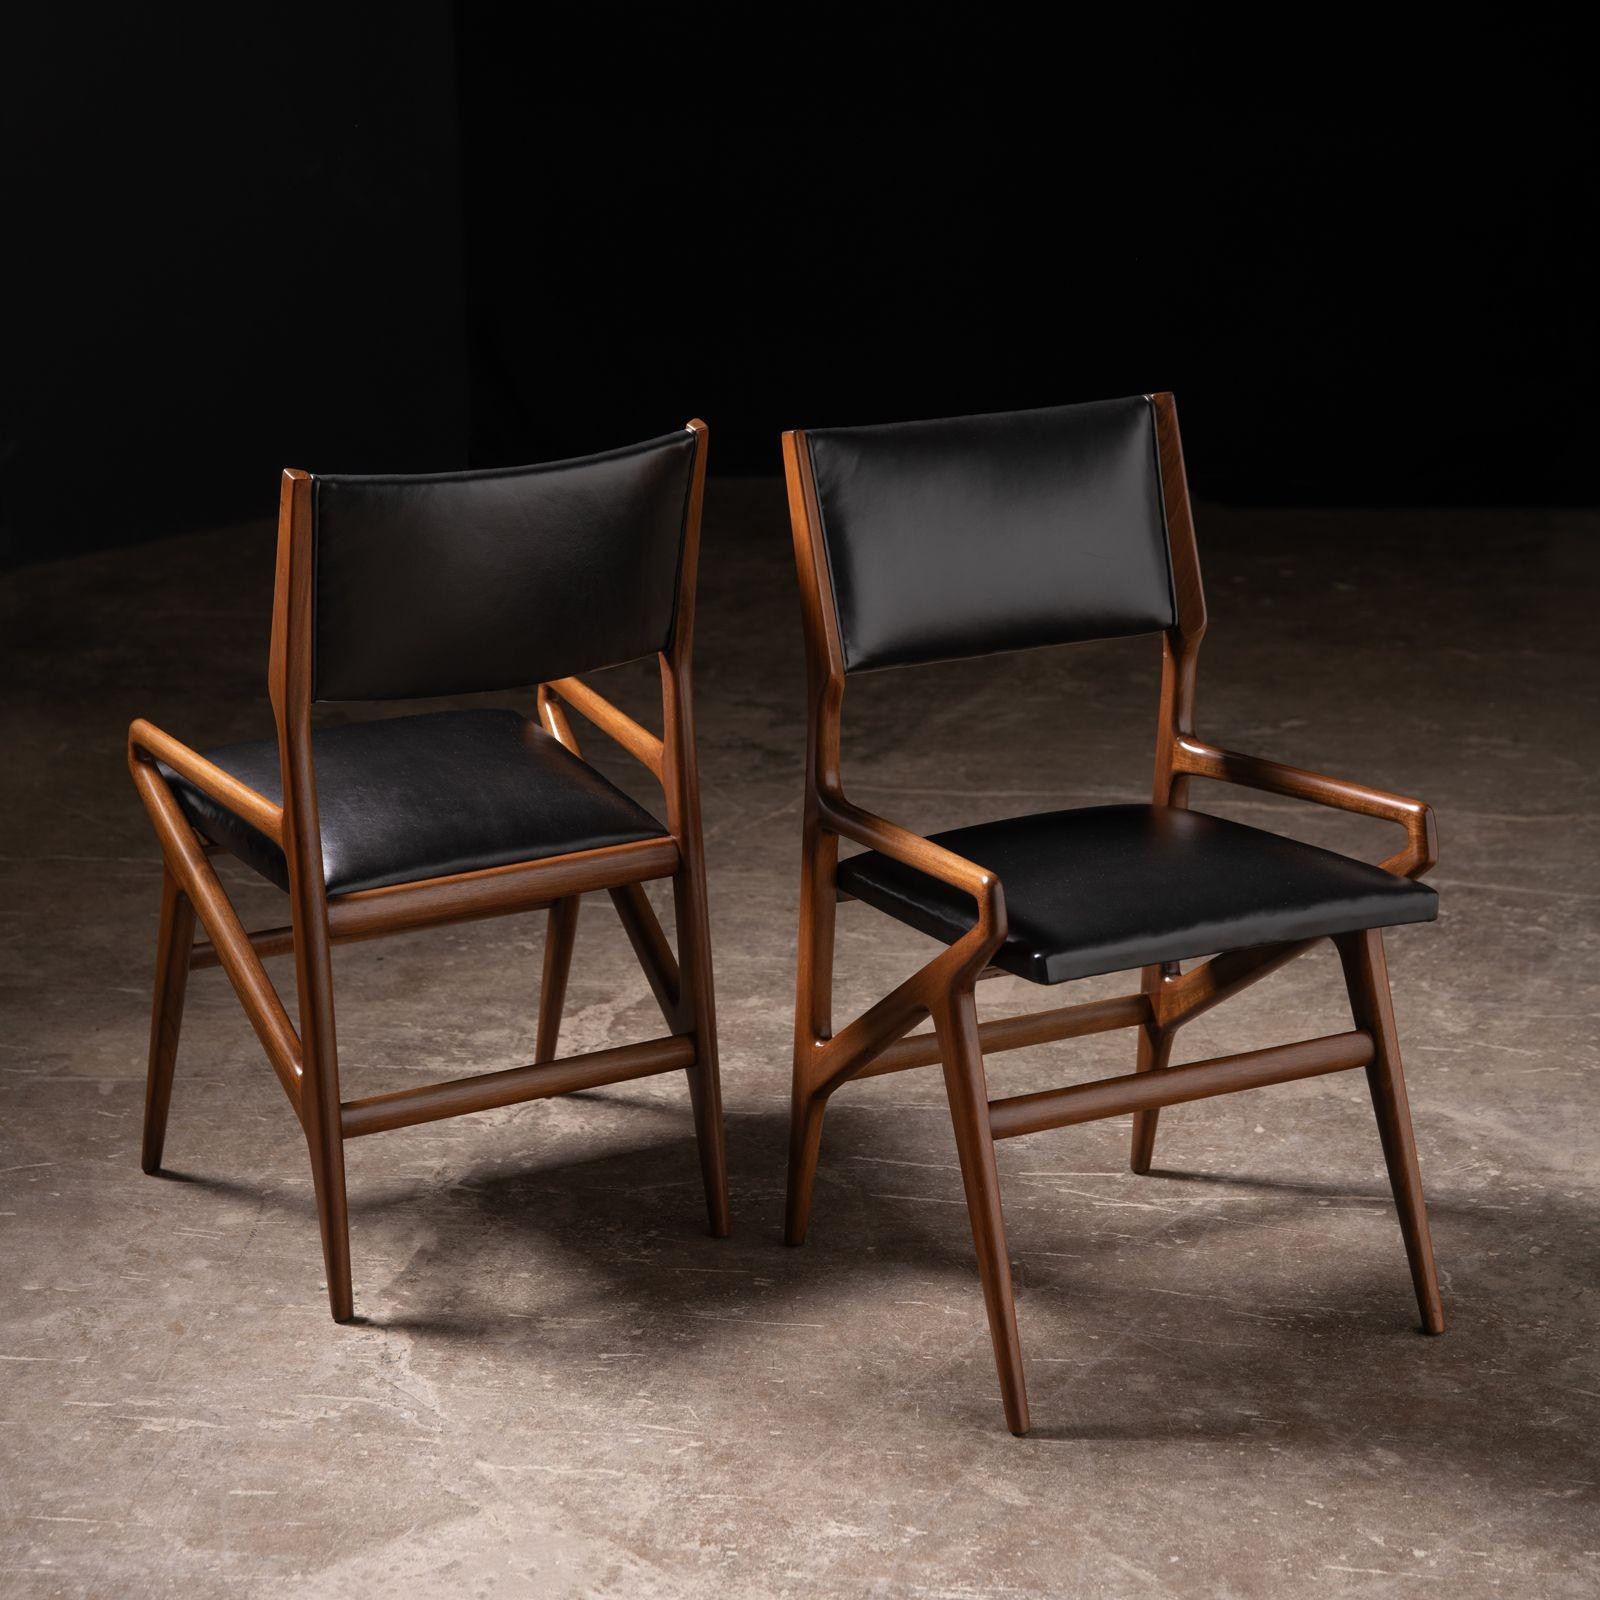 Ensemble de quatre chaises de salle à manger modèle 211 conçu par Gio Ponti, 1955 pour Singer & Sons. La chaise modèle 211 a été conçue à l'origine pour la Villa Arreaza à Caracas en 1954. Les chaises sont en noyer et en cuir et ont été restaurées